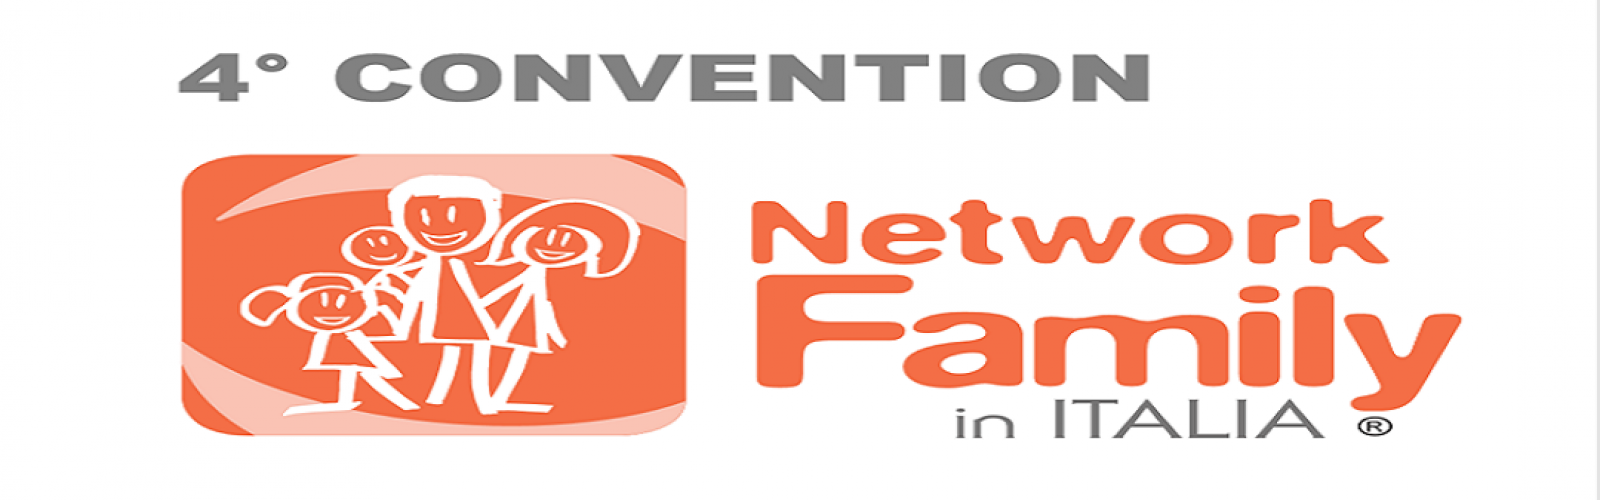 Quarta Convention Network Family in Italia. Le politiche comunali per il benessere della famiglia